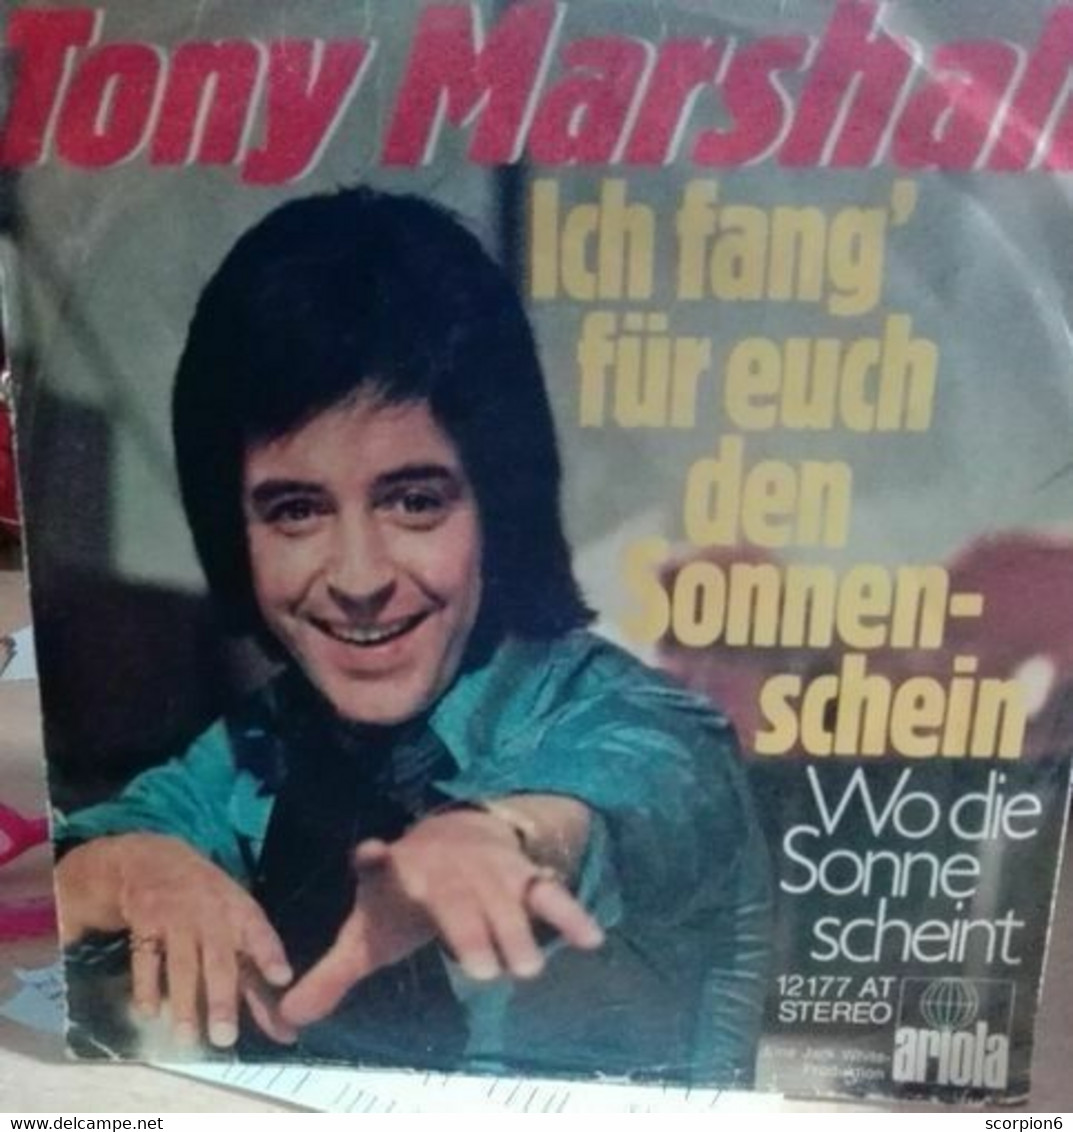 7" Single - Tony Marshall - Ich Fang' Für Euch Den Sonnenschein - Sonstige - Deutsche Musik